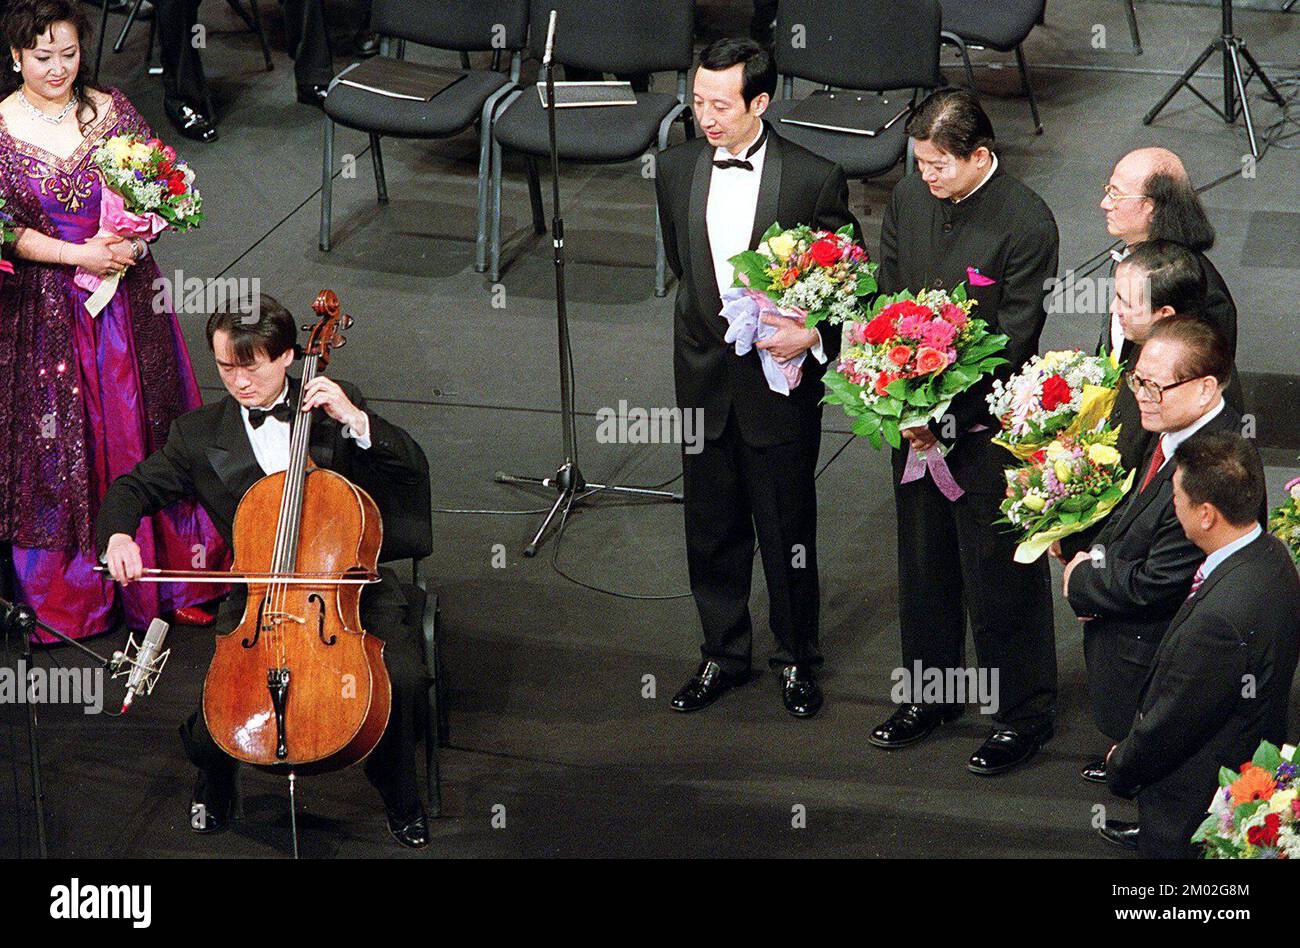 Il violoncellista Wang Jian ha suonato una canzone su richiesta del presidente Jiang Zemin al termine della celebrazione per l'annivity di consegna di Macao al Centro Culturale. Macao. ***NON PER USO PUBBLICITARIO*** Foto Stock